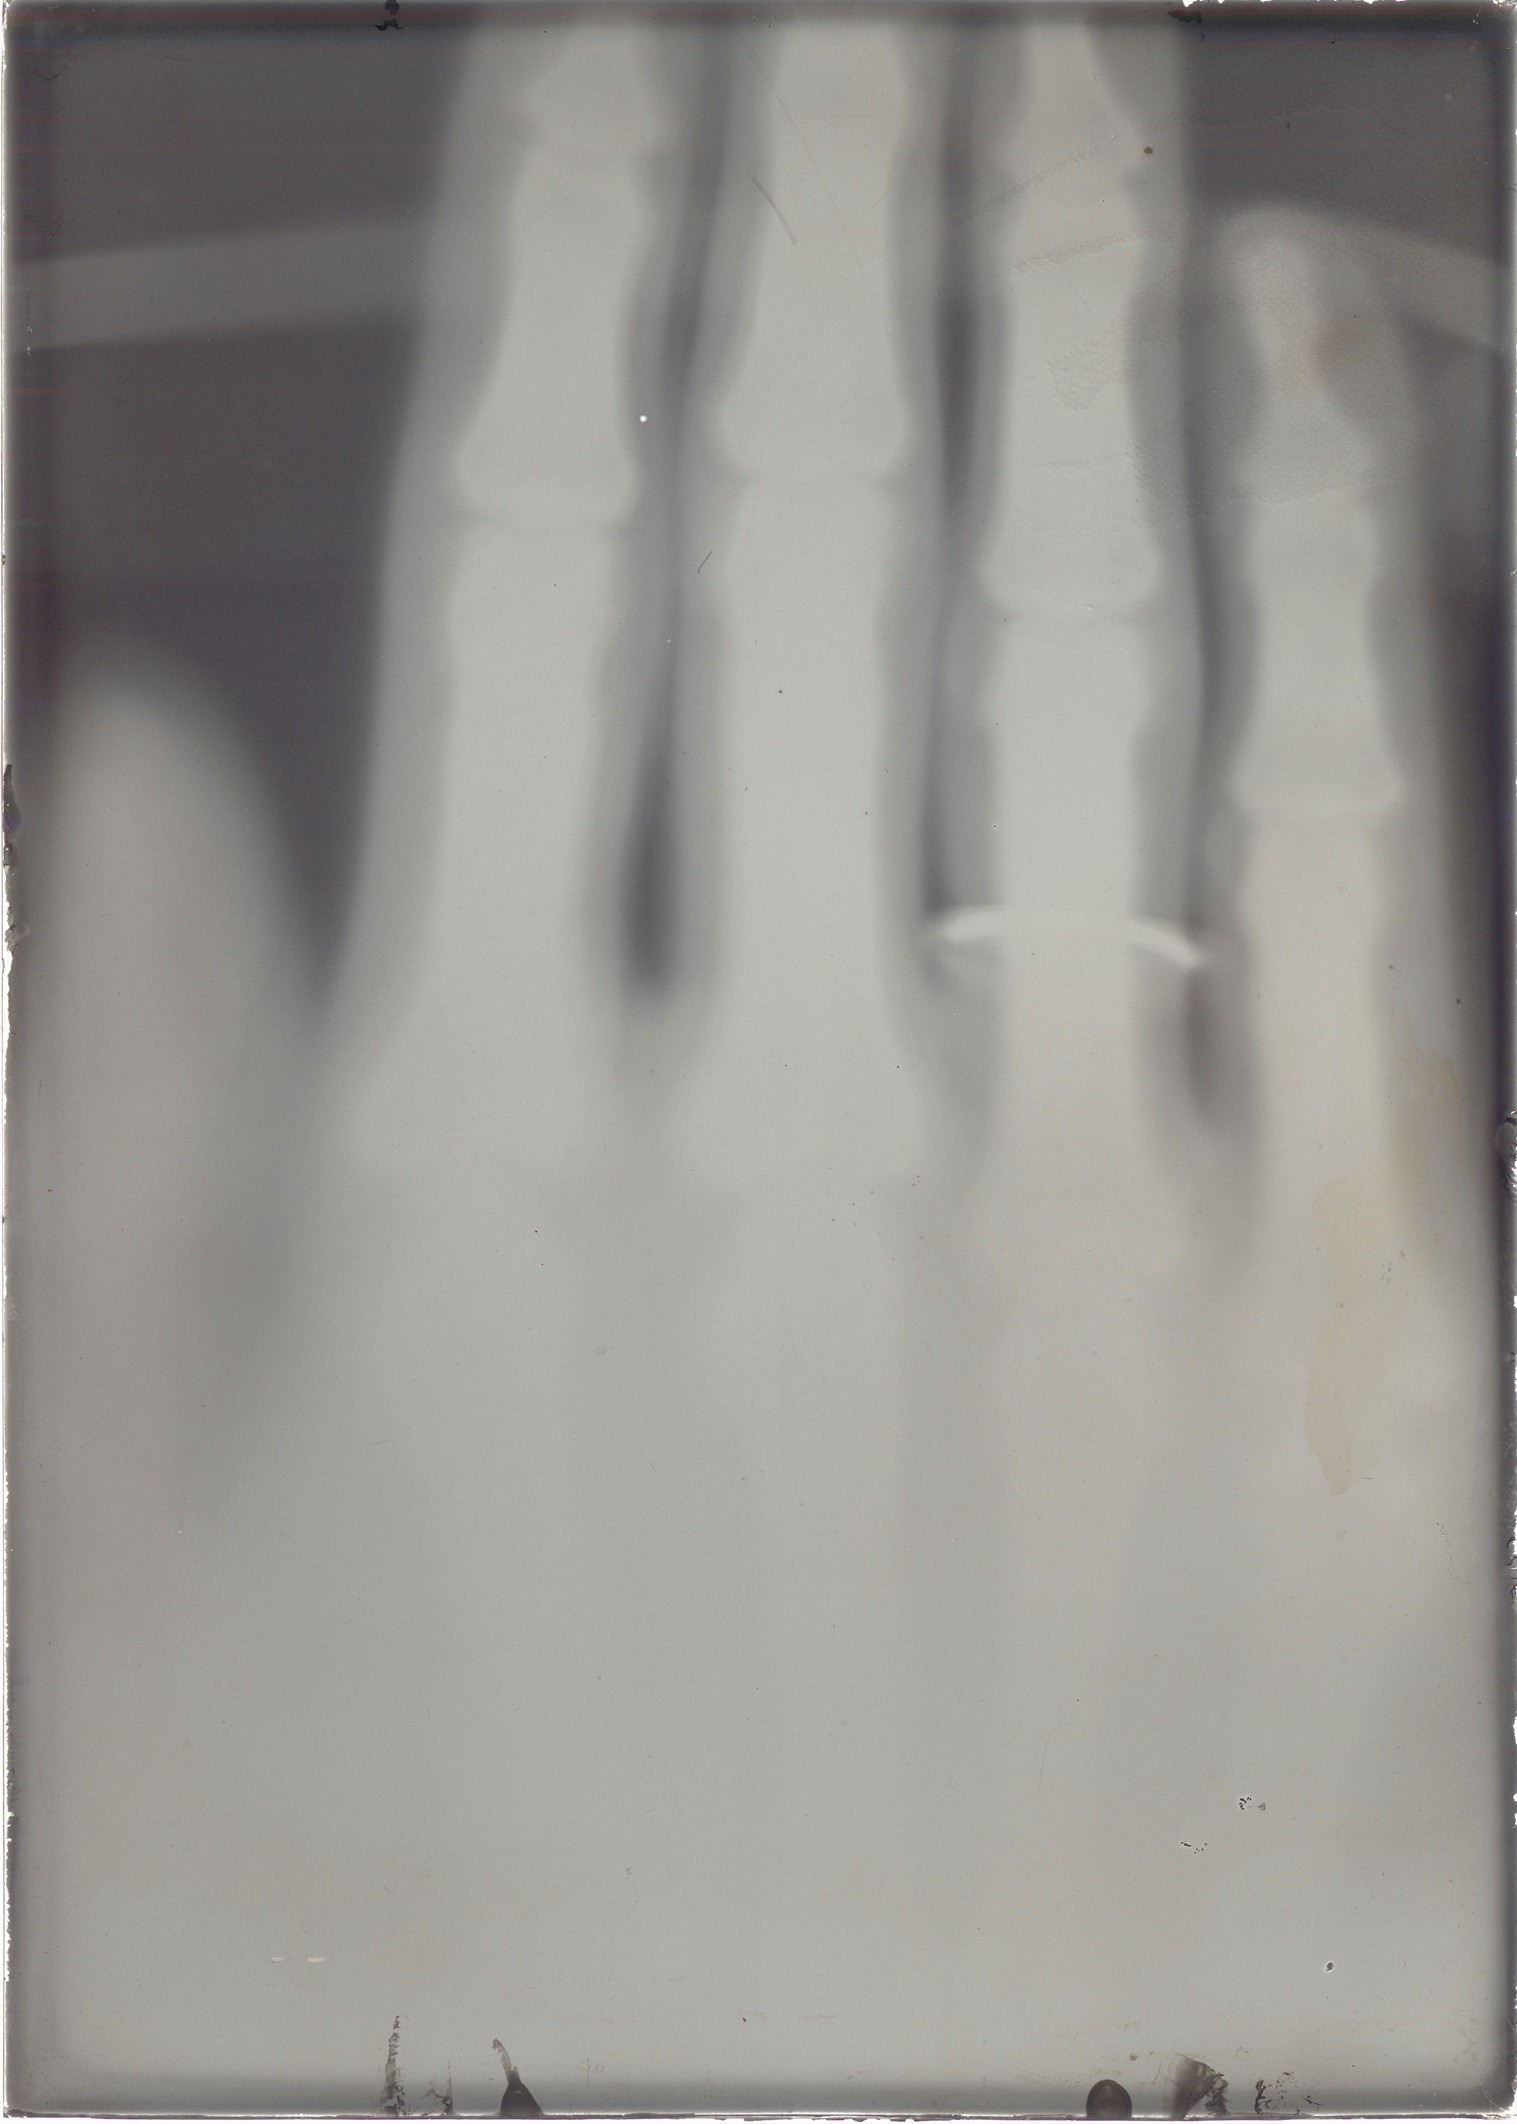 Versuch: Röntgenaufnahme einer Hand (November-Dezember 1895), 86728 gp (Deutsches Röntgen-Museum CC BY-NC-SA)